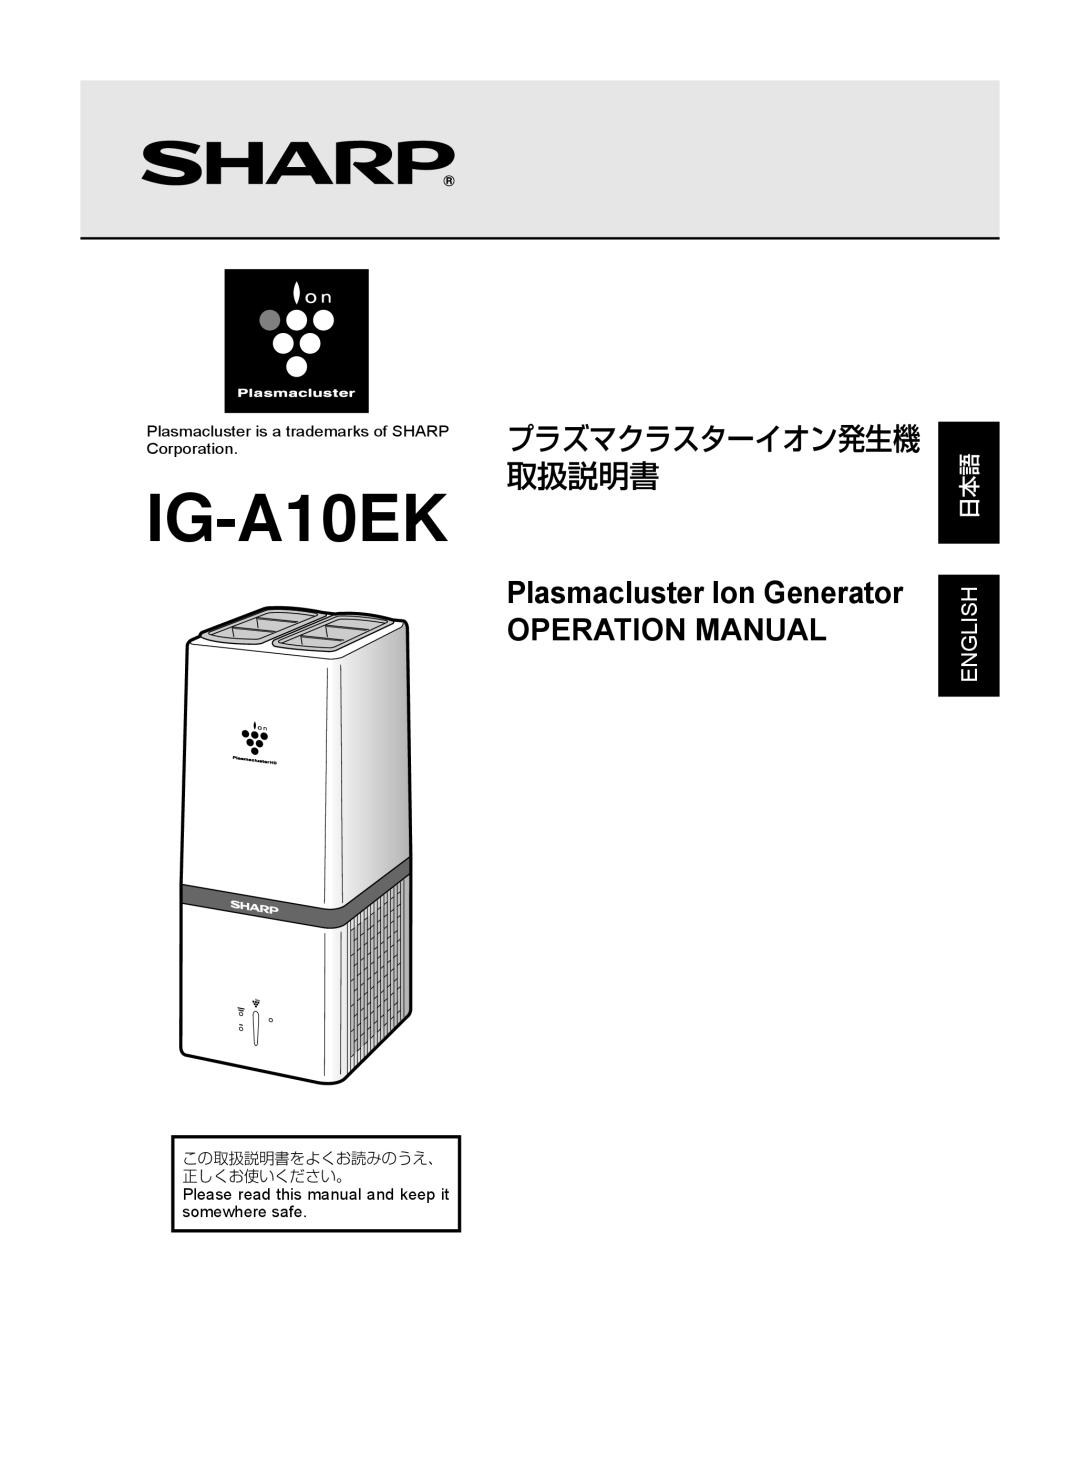 Sharp IG-A10EK operation manual プラズマクラスターイオン発生機 取扱説明書, English 日本語, この取扱説明書をよくお読みのうえ、 正しくお使いください。 